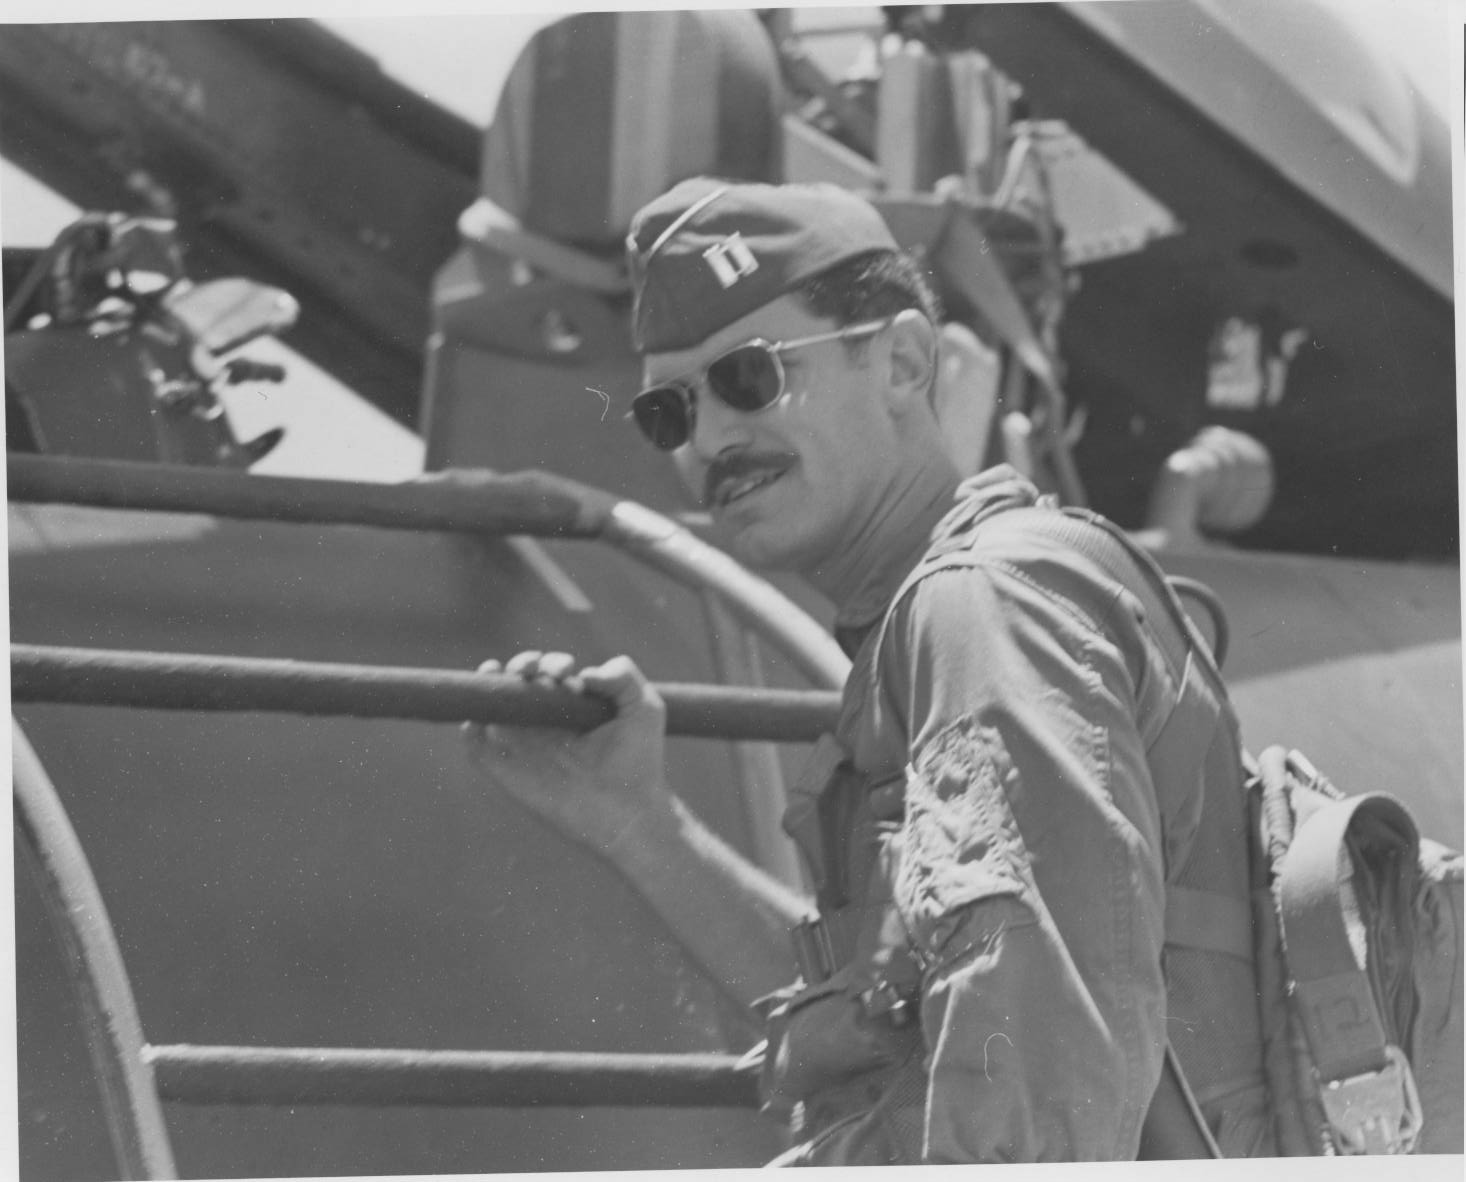 Dean Echenberg during flight training in Vietnam